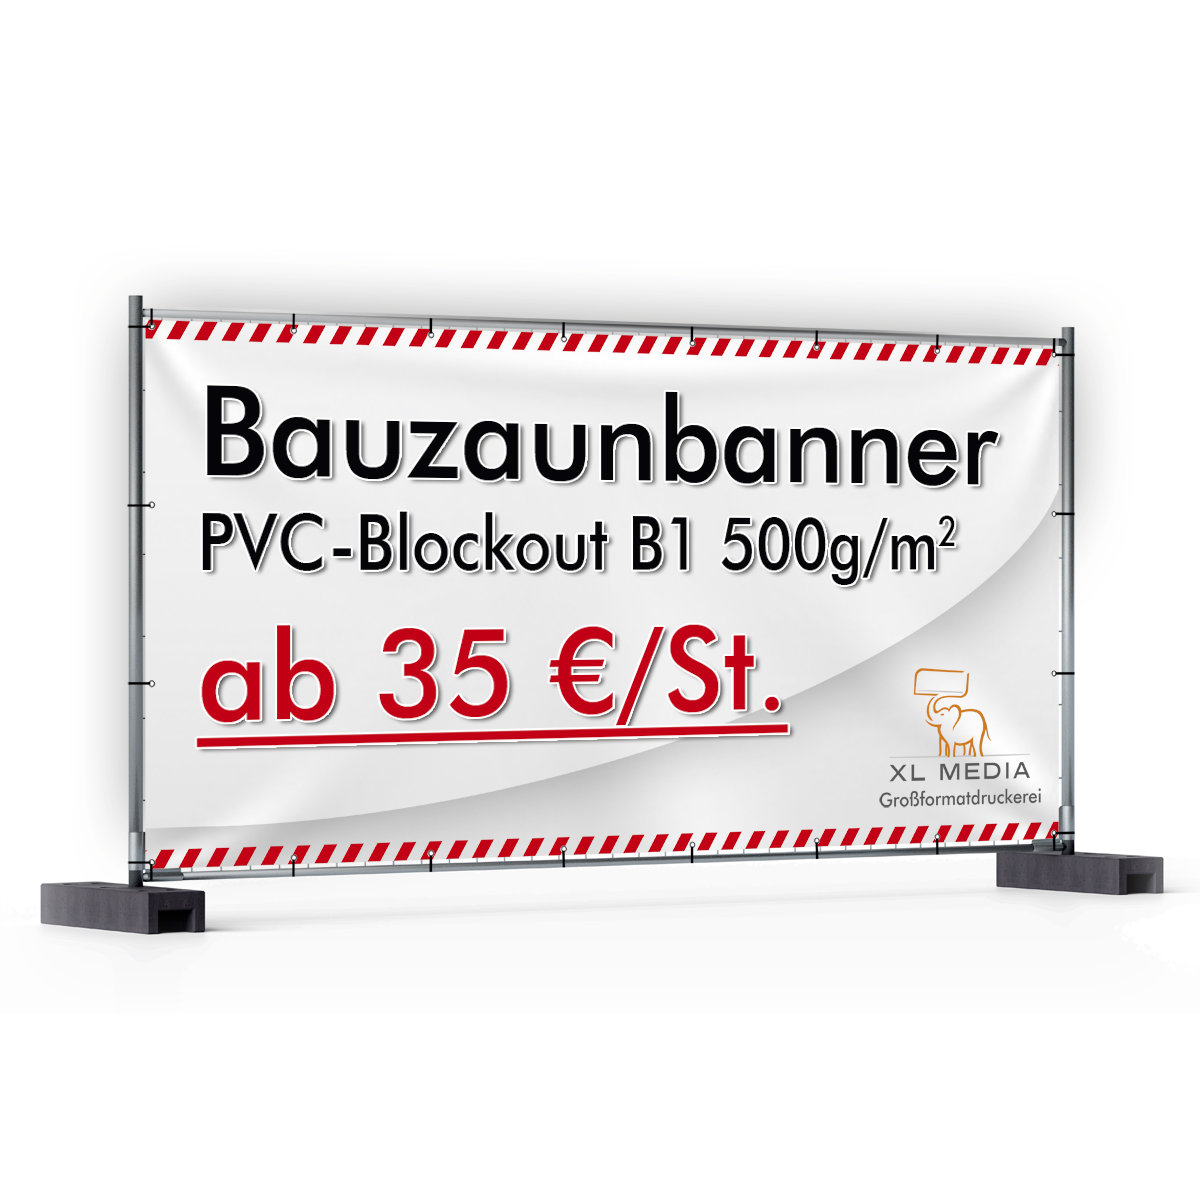 PVC-Blockout B1 500g/m²